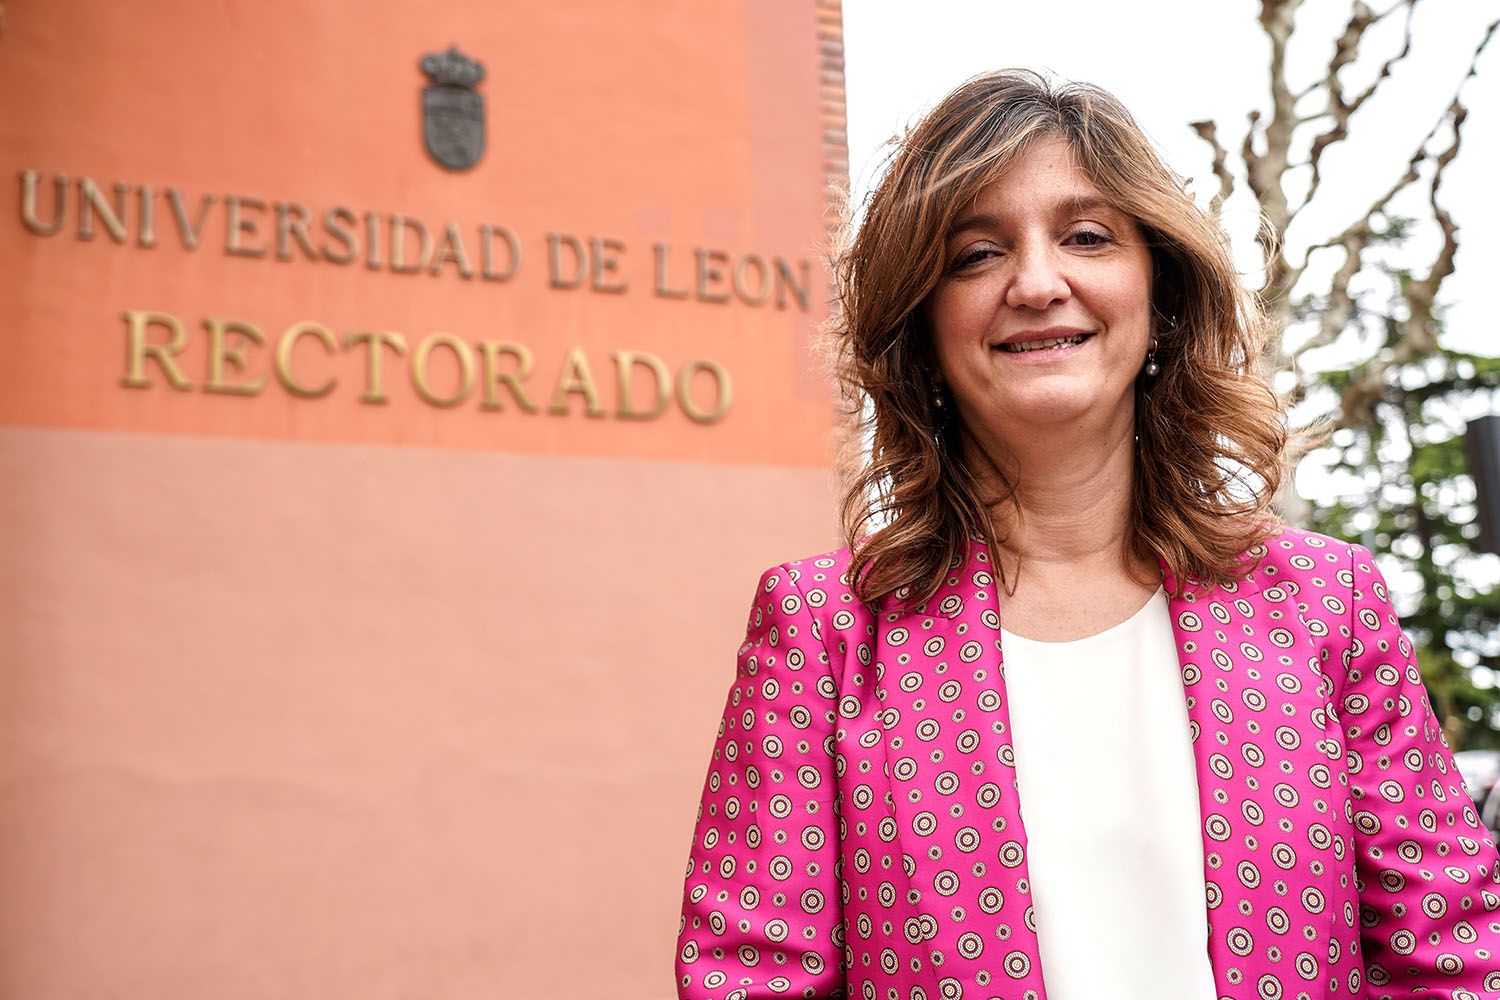 Nuria González: “Pienso ir a Valladolid a defender con fuerza y determinación las demandas legítimas de la ULE y no en busca de intereses personales”